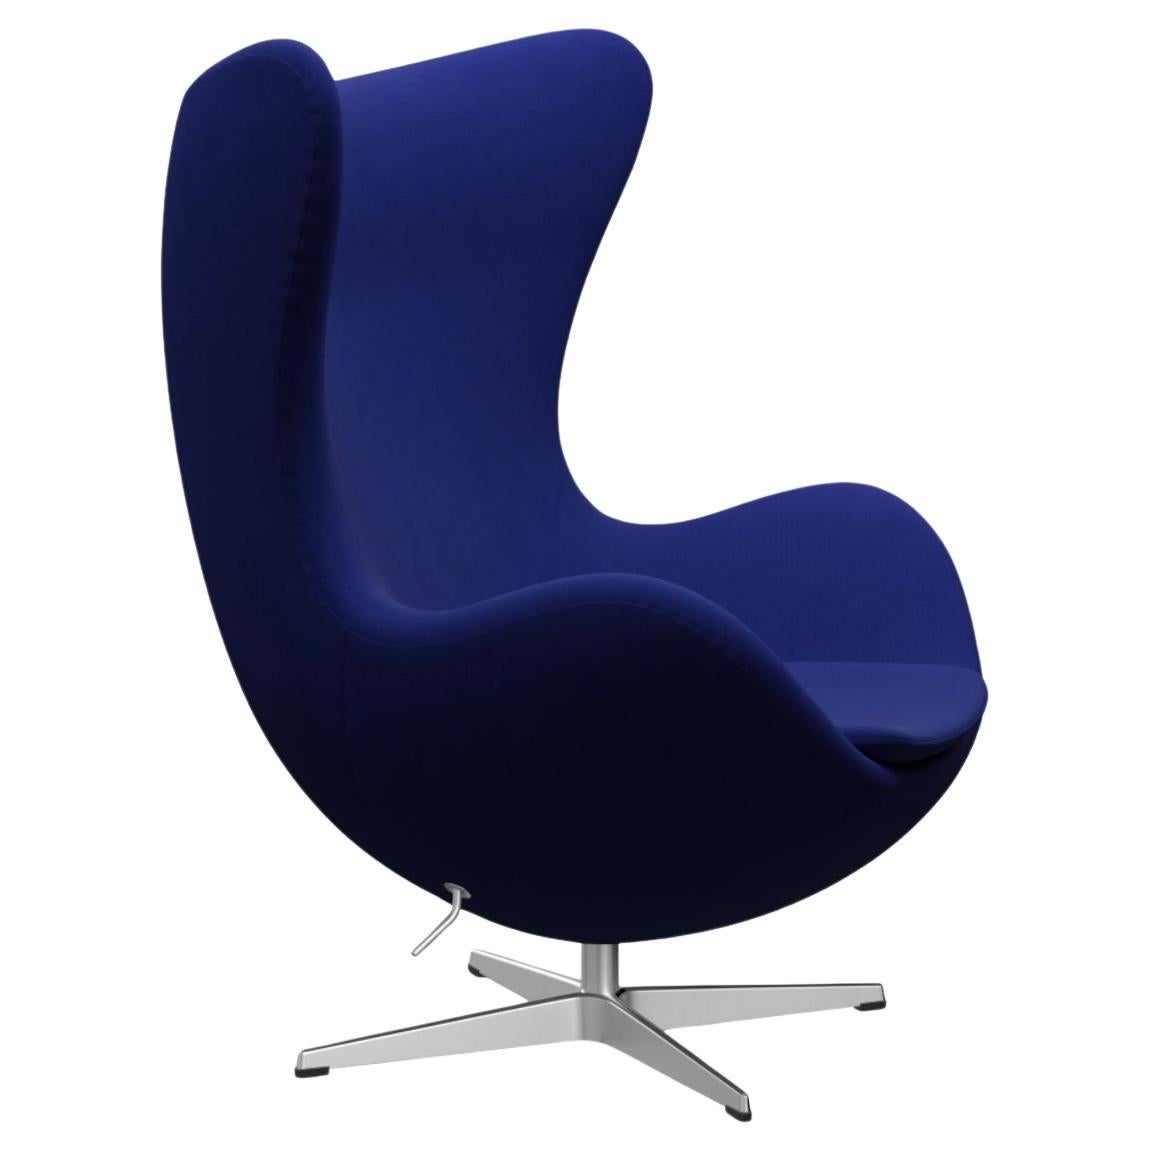 La chaise Egg d'Arne Jacobsen pour Fritz Hansen, bleu, Danemark, 1958, années 2000.  Le coussin Scalamandre de l'image principale est présenté à des fins d'affichage uniquement et n'est PAS inclus dans la chaise.  

La chaise Egg™ d'Arne Jacobsen